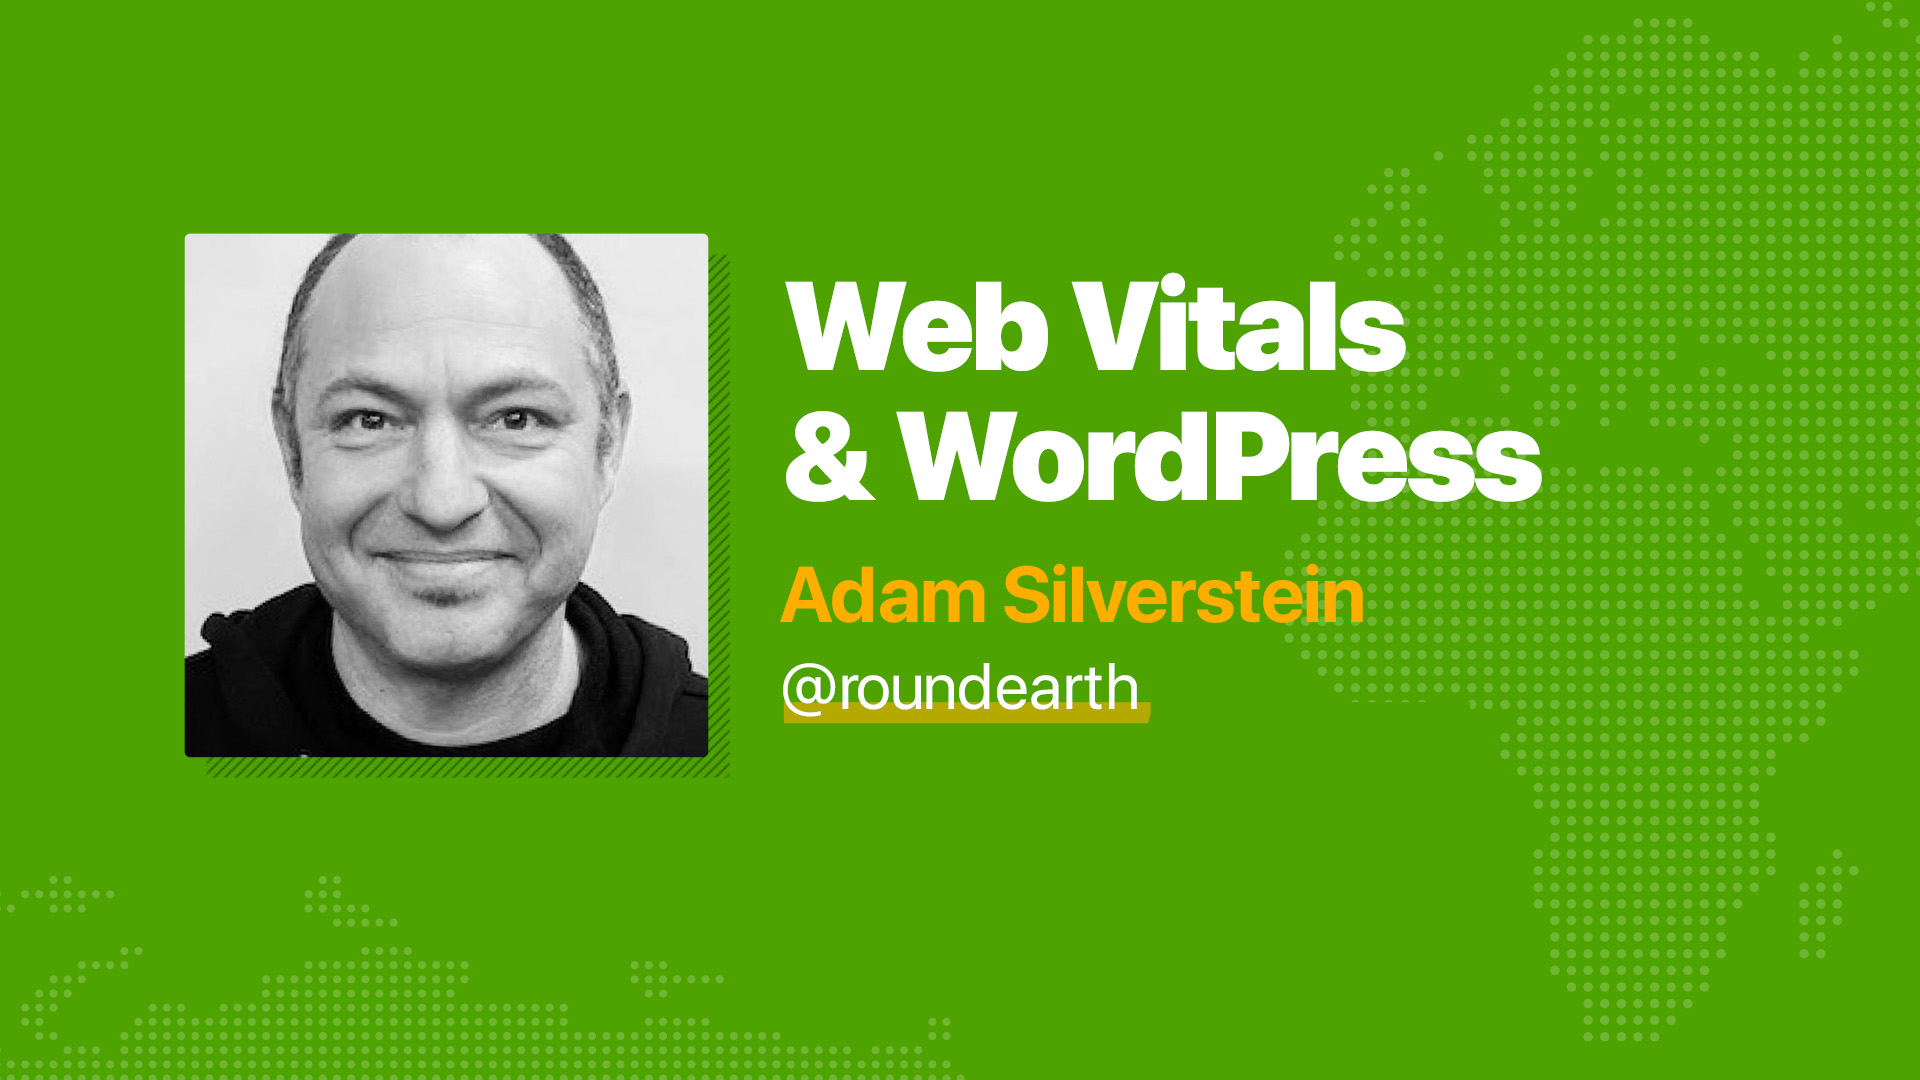 Web Vitals & WordPress - Adam Silverstein